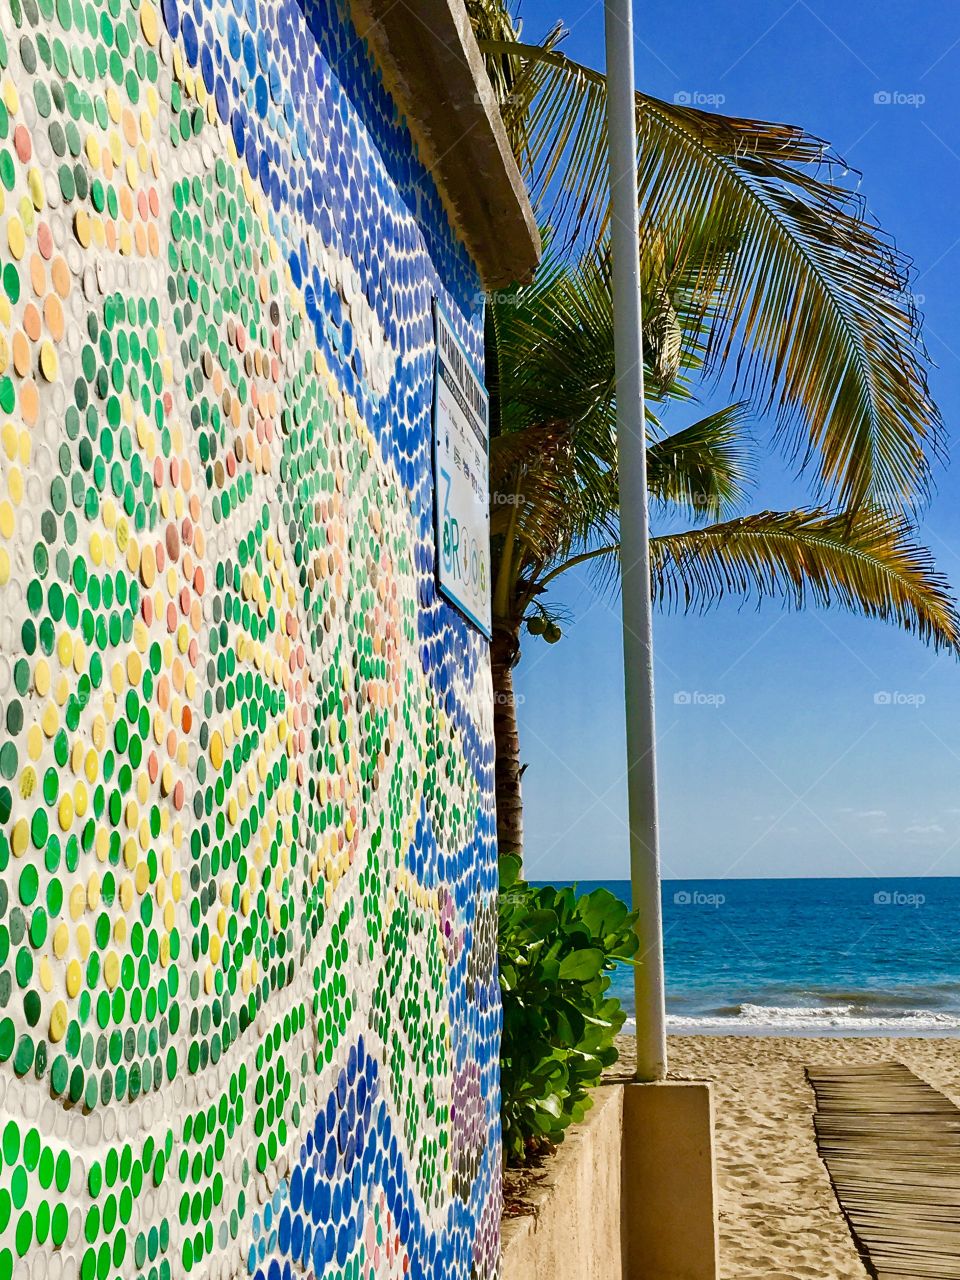 Beach mosaic